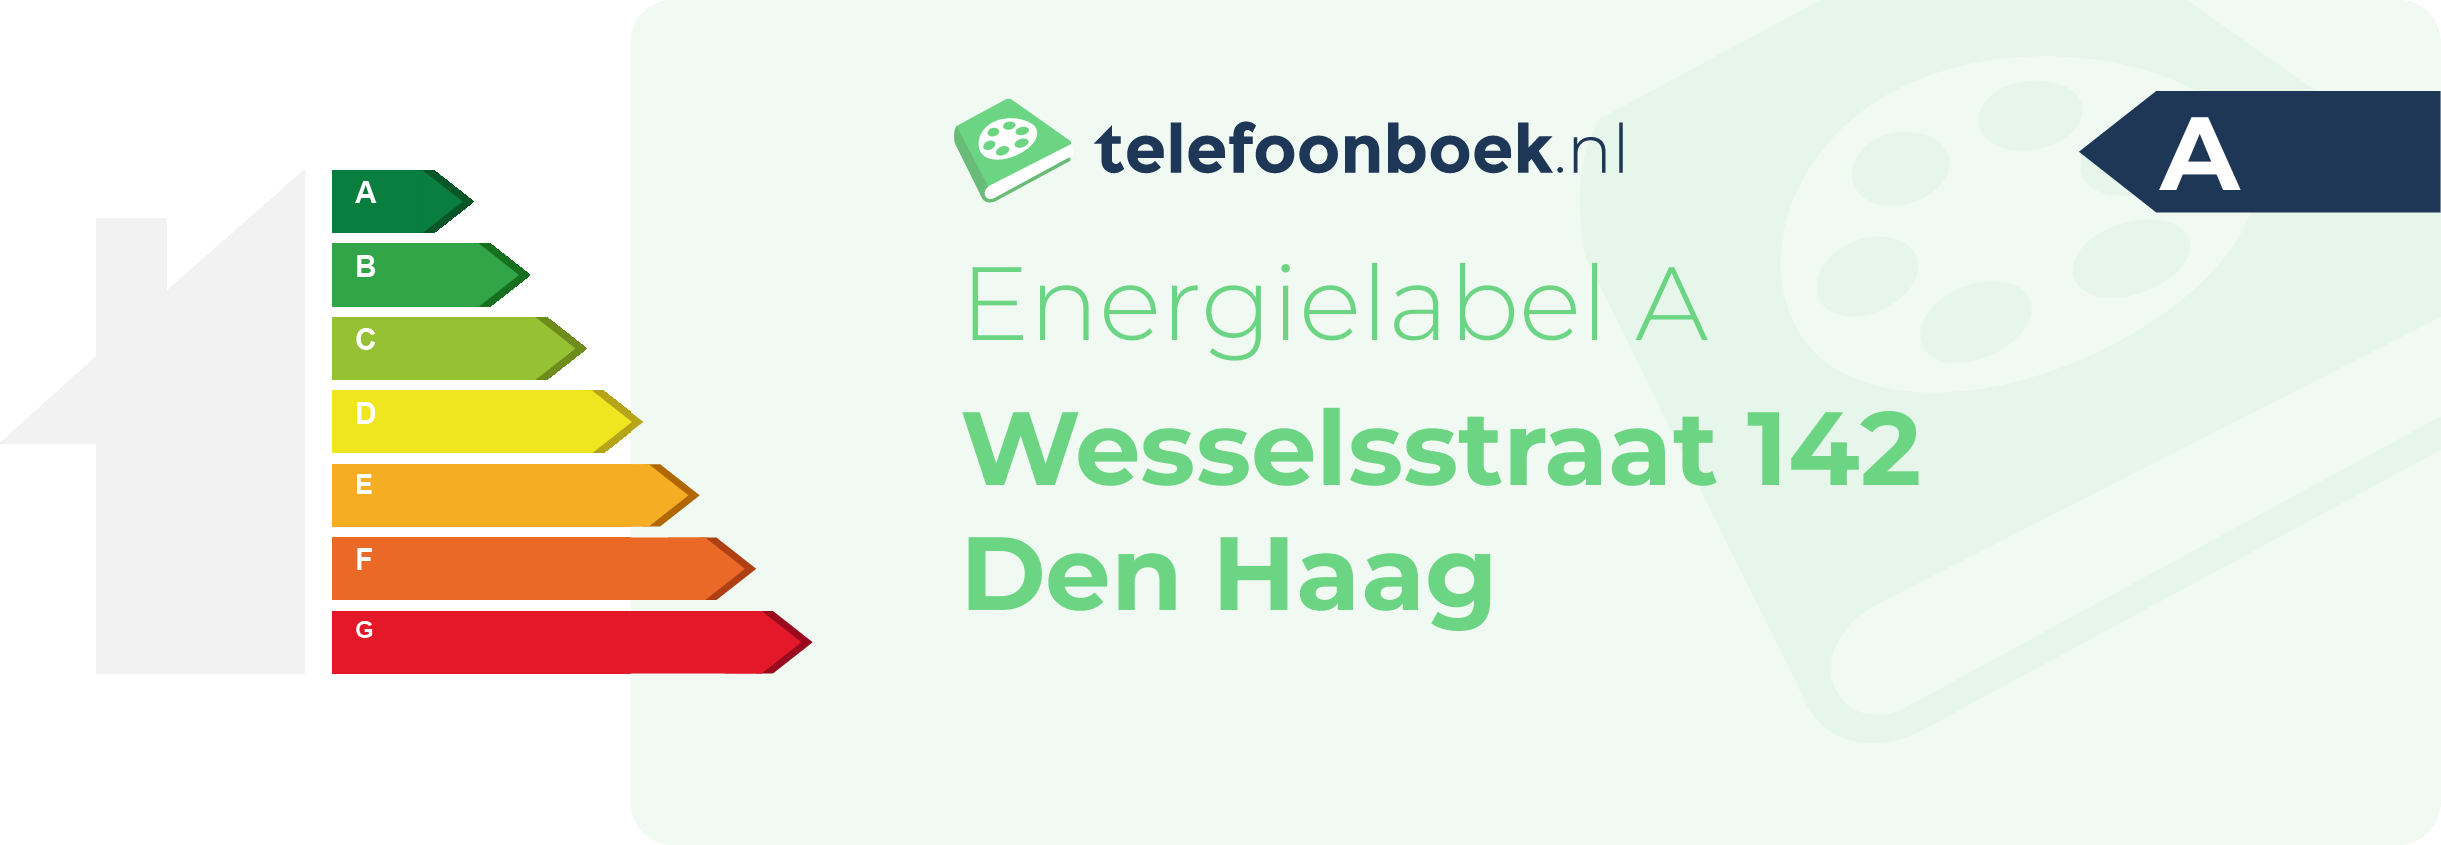 Energielabel Wesselsstraat 142 Den Haag